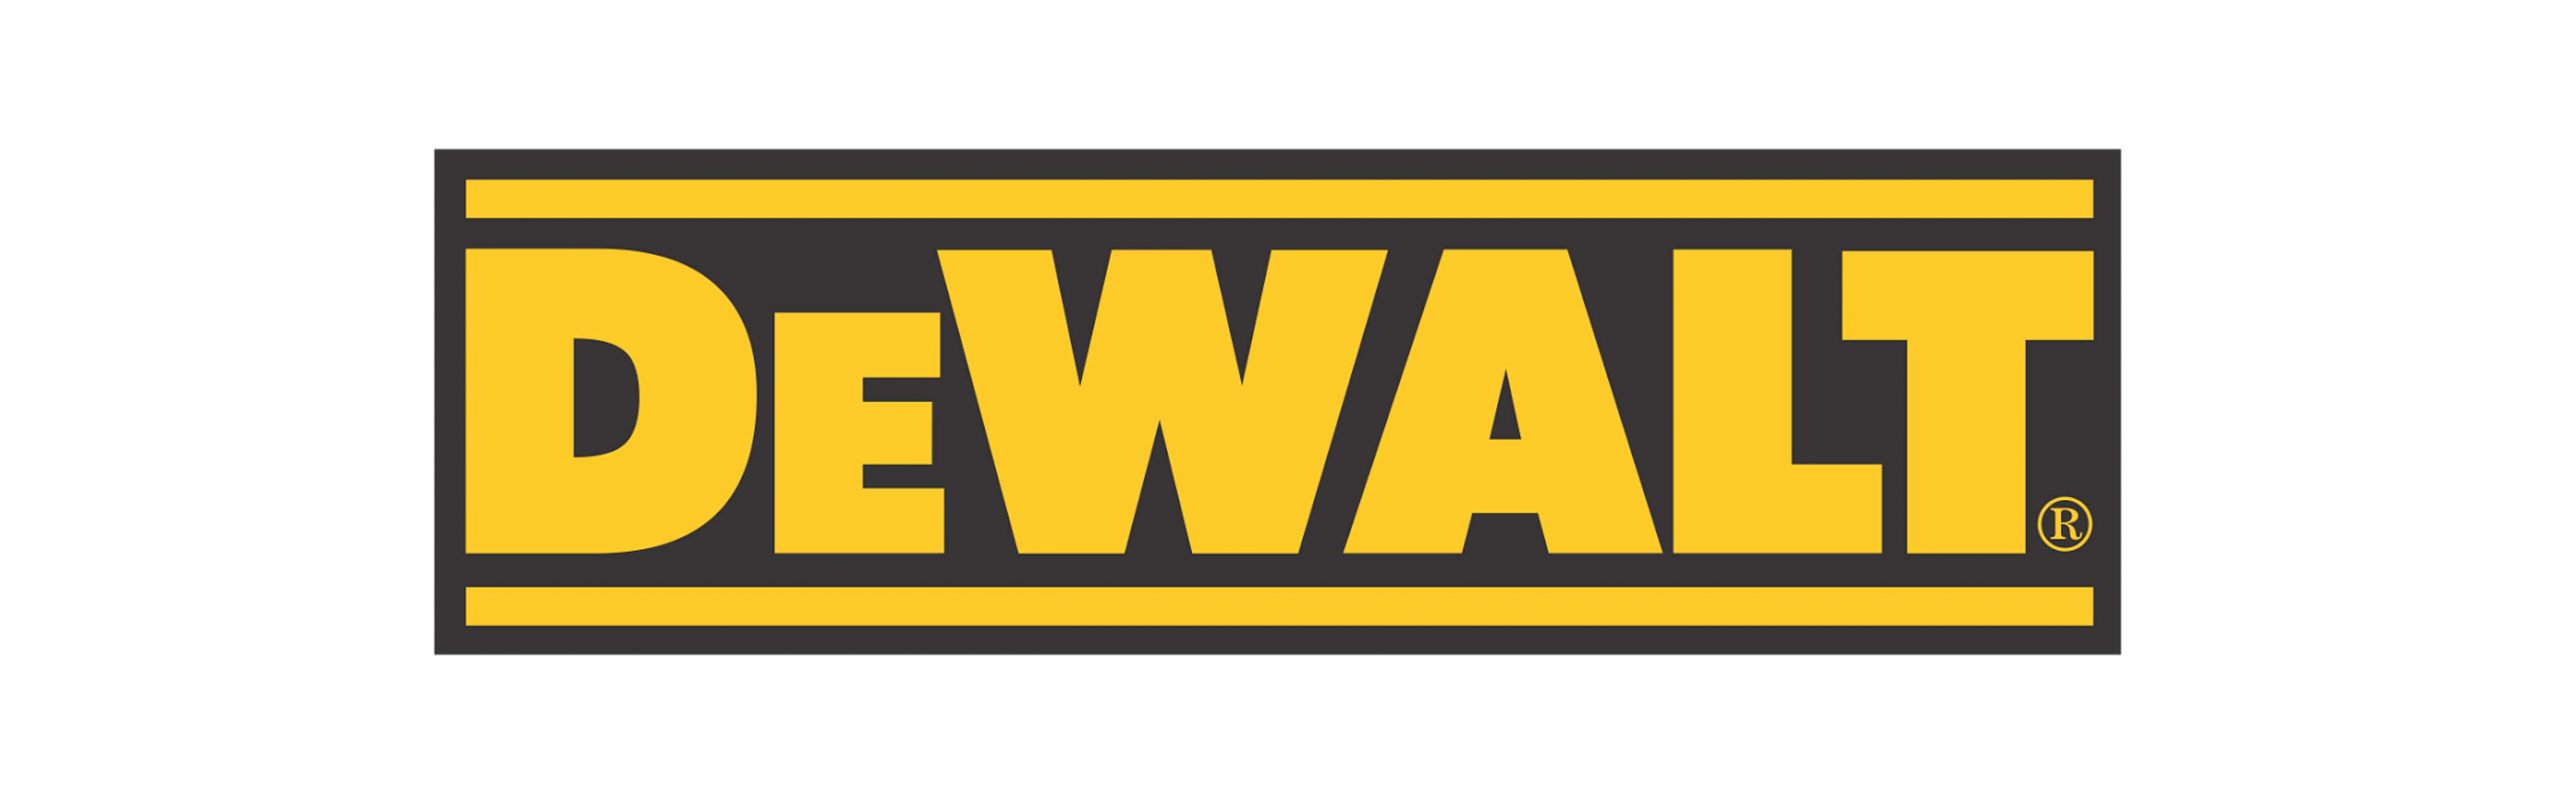 DEWALT_logo